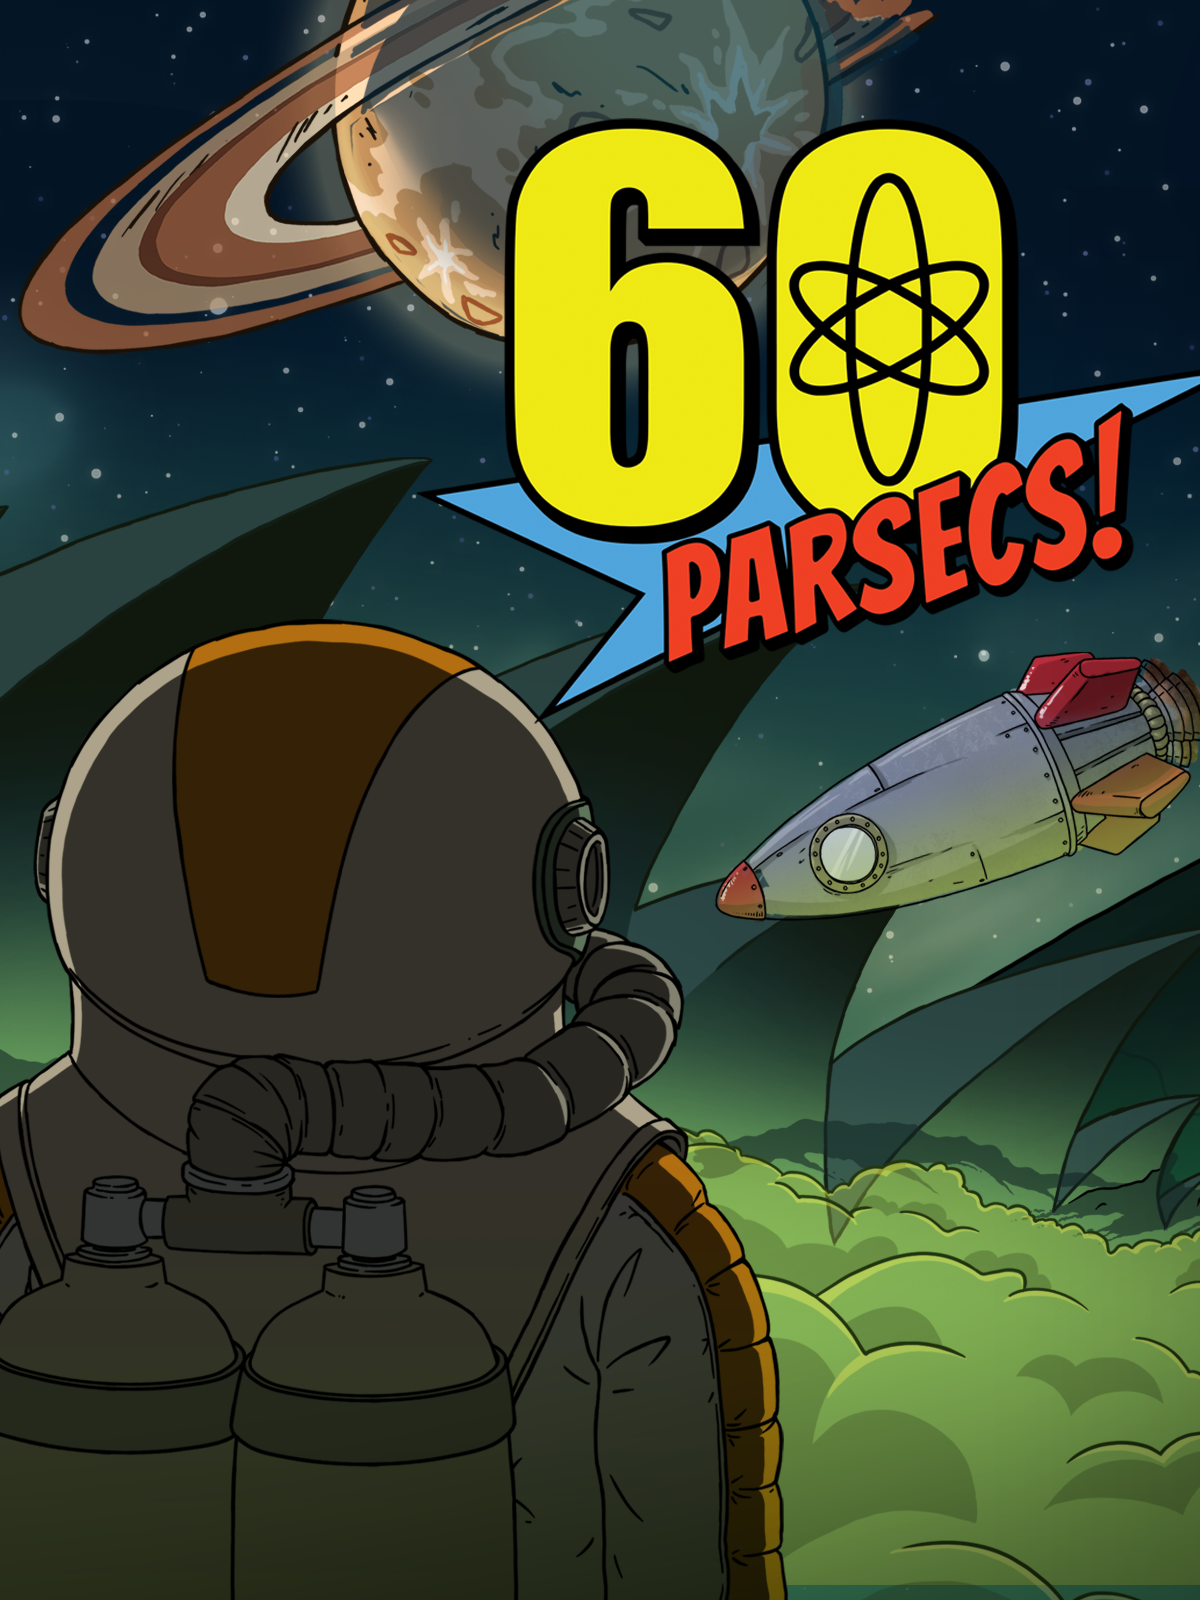 60秒差距/太空60秒/60 Parsecs!